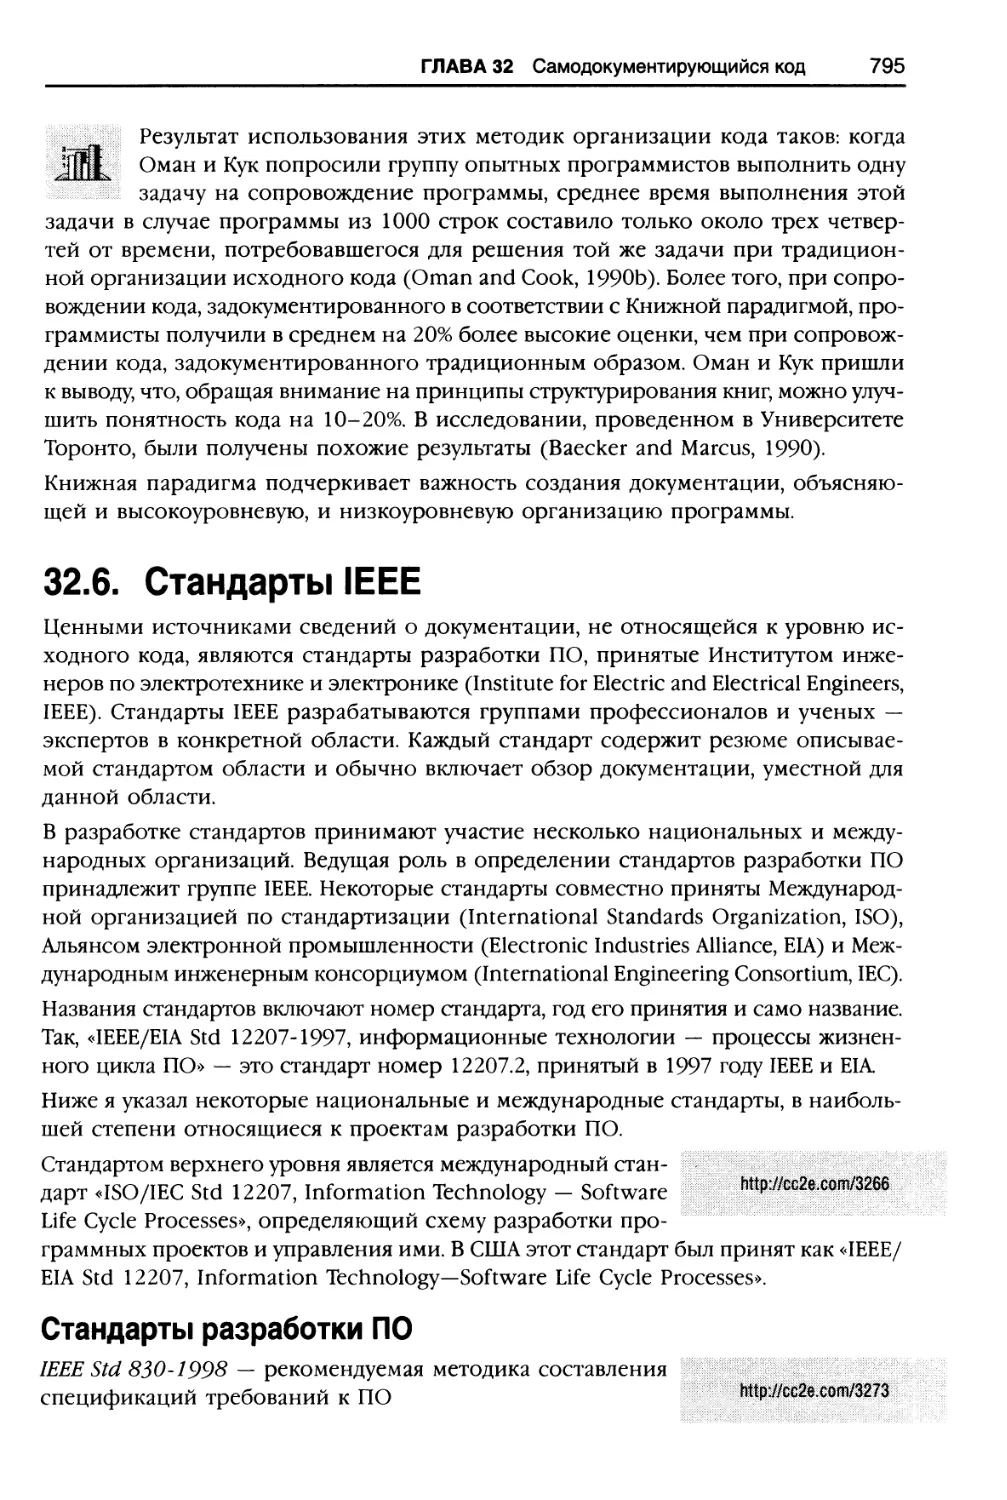 32.6. Стандарты IEEE